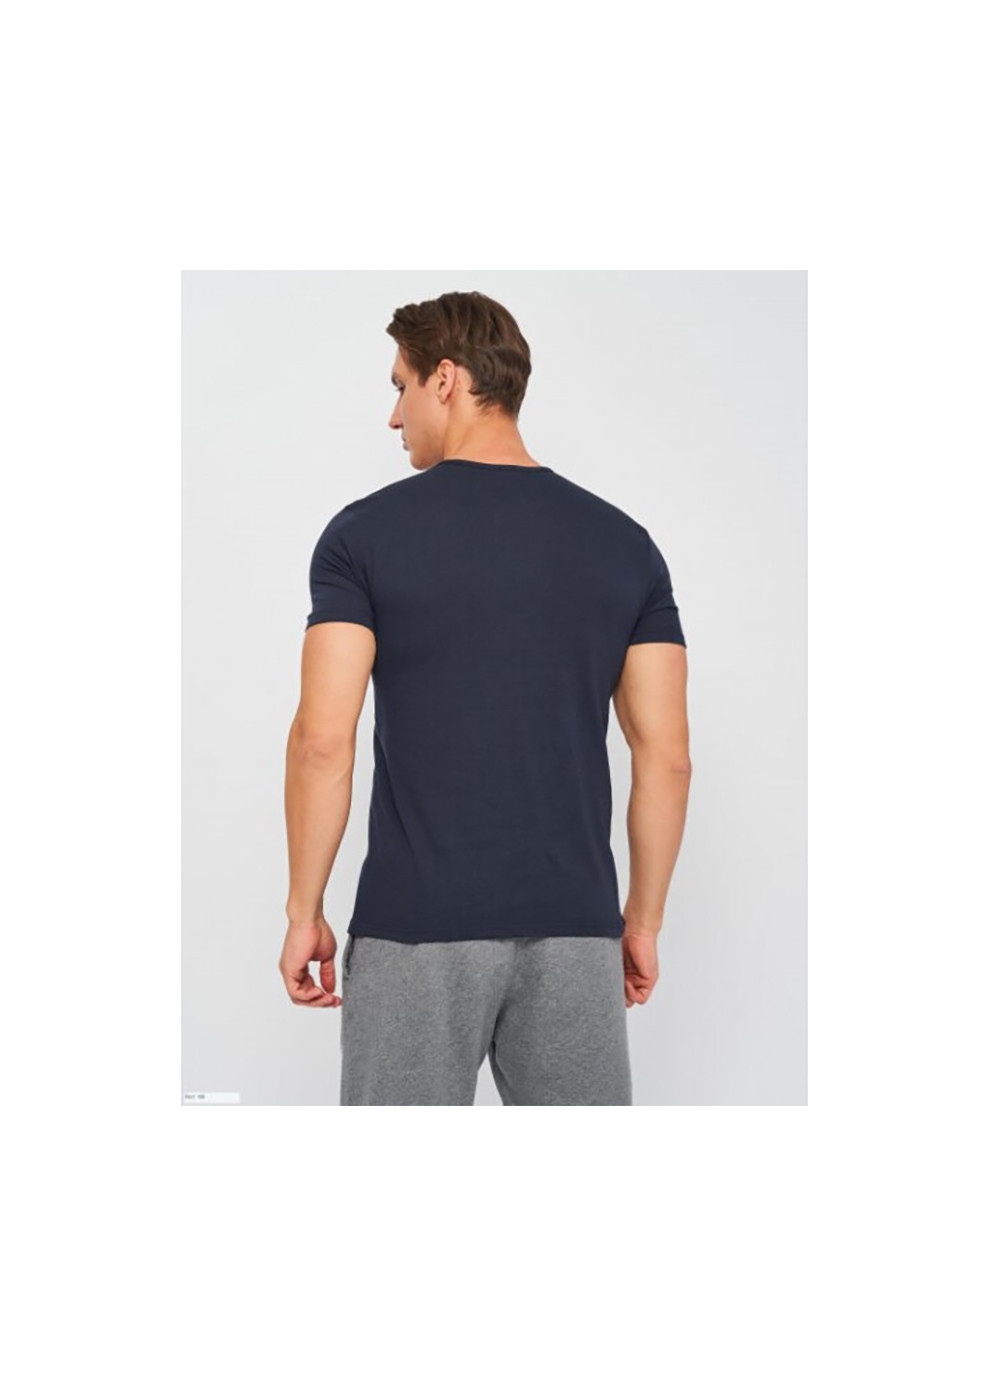 Темно-синя футболка t-shirt mezza manica girocollo stampa logo petto темно-синій m чоловік k1335 k1335 blunavy-m Kappa